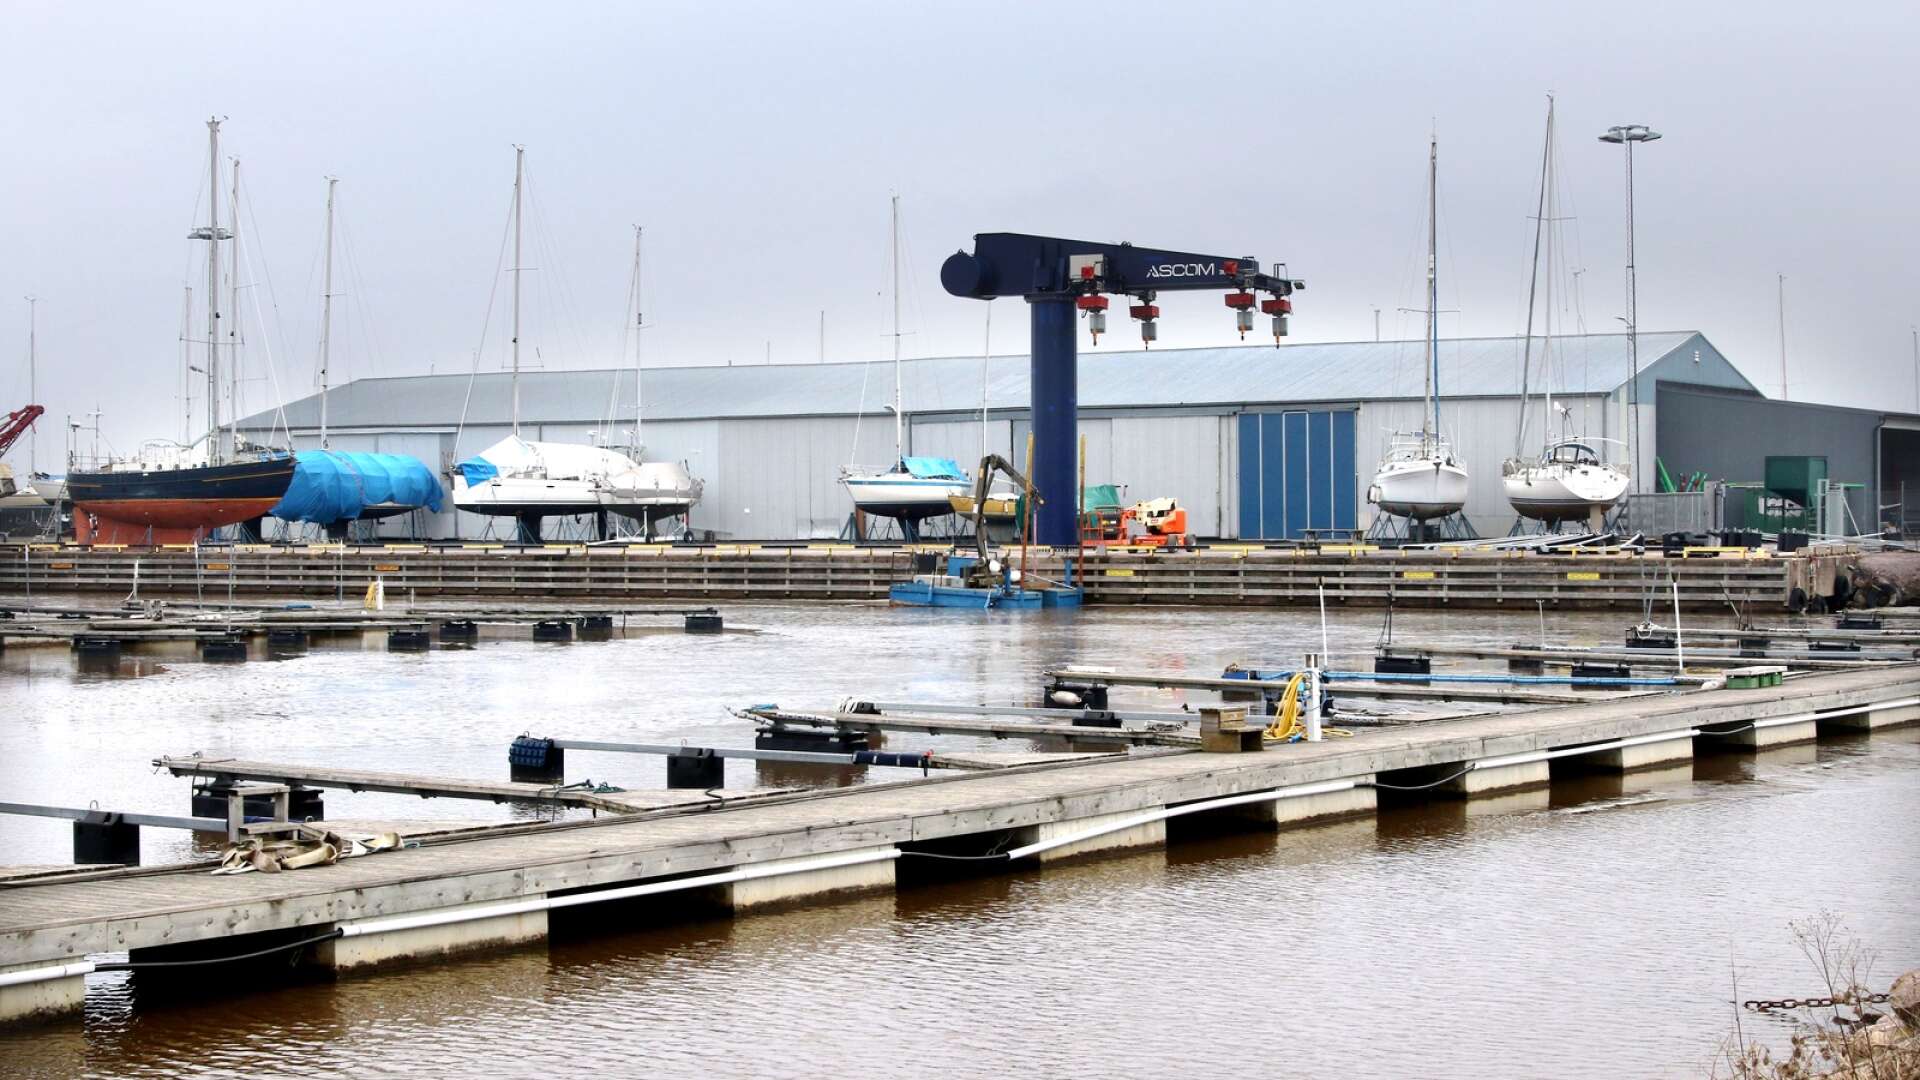 Sjöstadens varv har hyrt lokaler i Mariestad hamn i flera decennier. Nu vill kommunen ha lokalen själv, men Sjöstadens varv ger inte upp. Nu har företaget sökt medling hos hyres- och arrendenämnden.